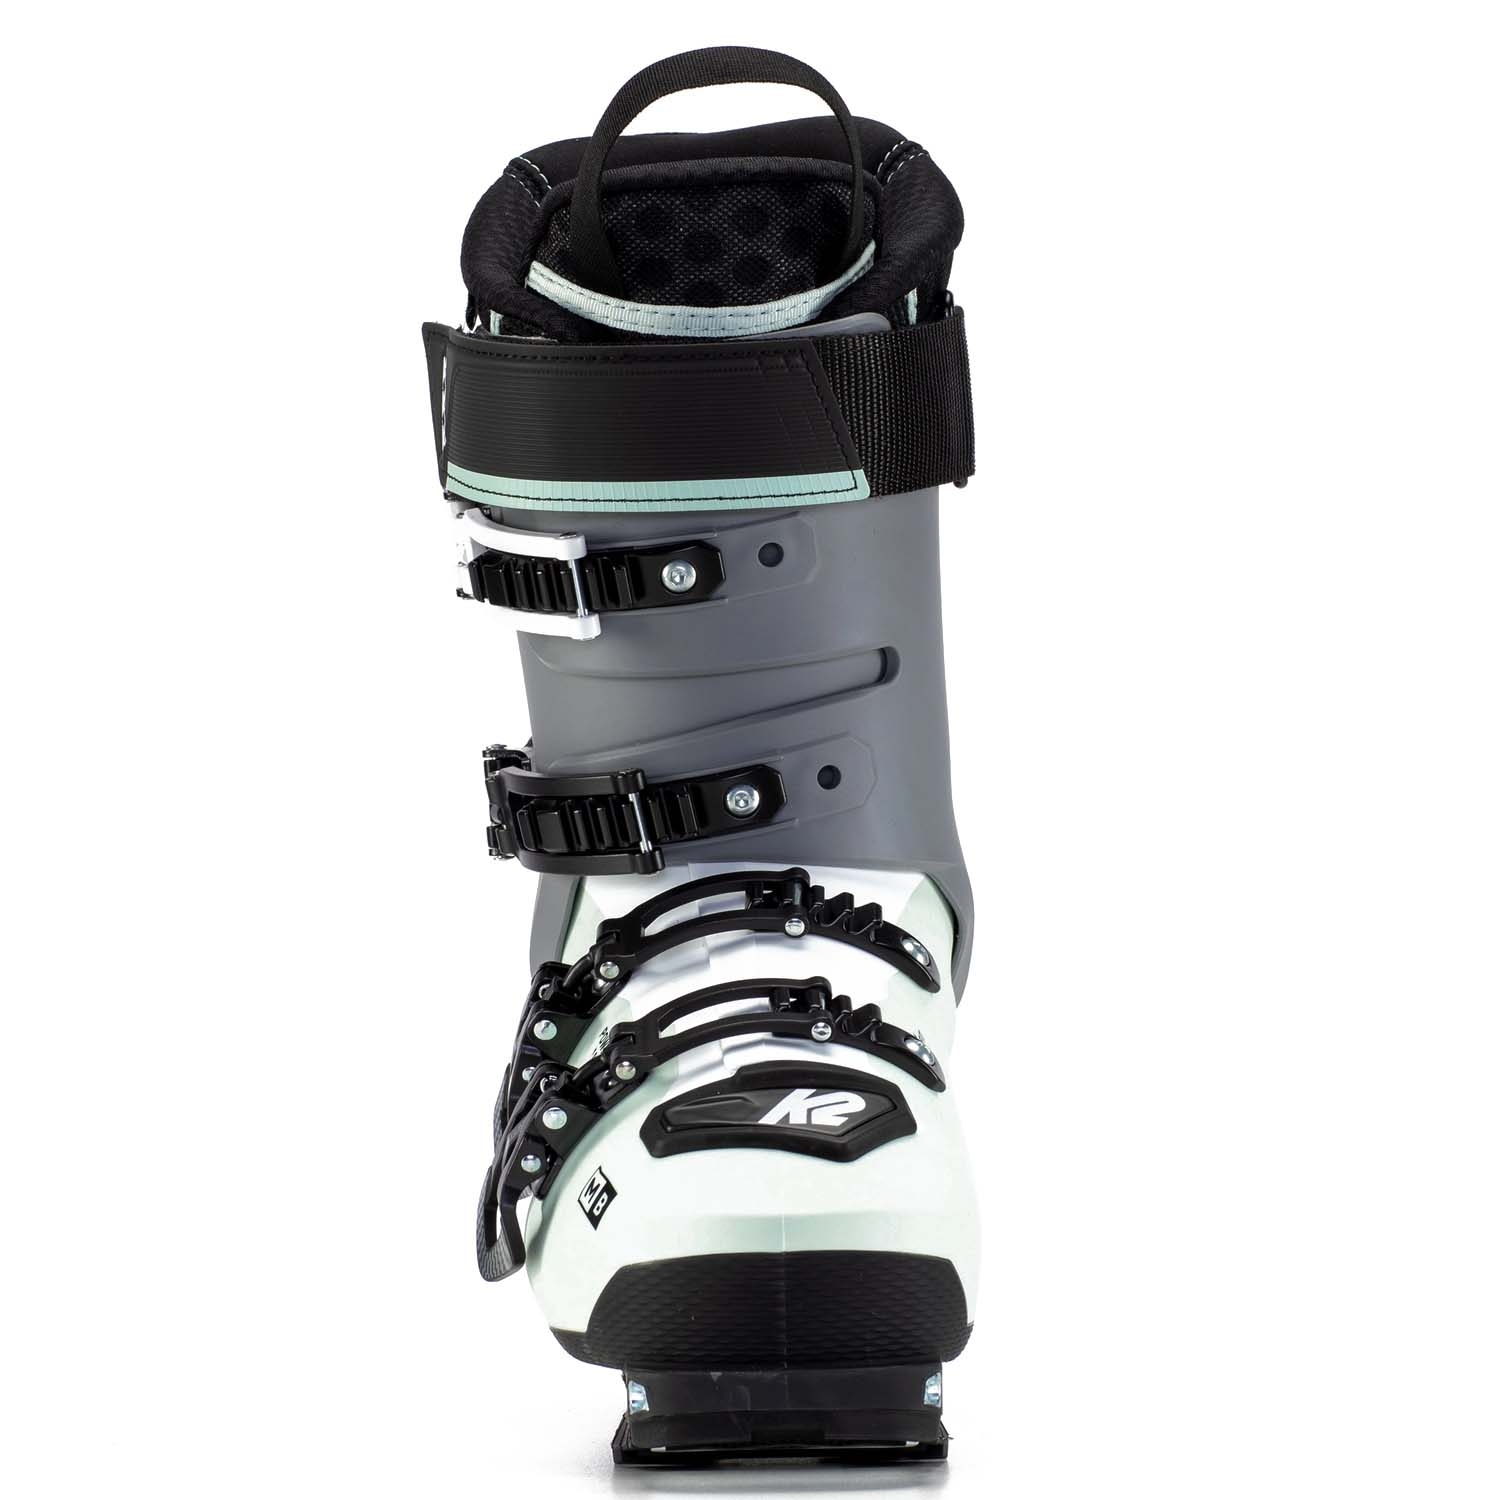 K2 Mindbender 90 Alliance Ski Boots 2022